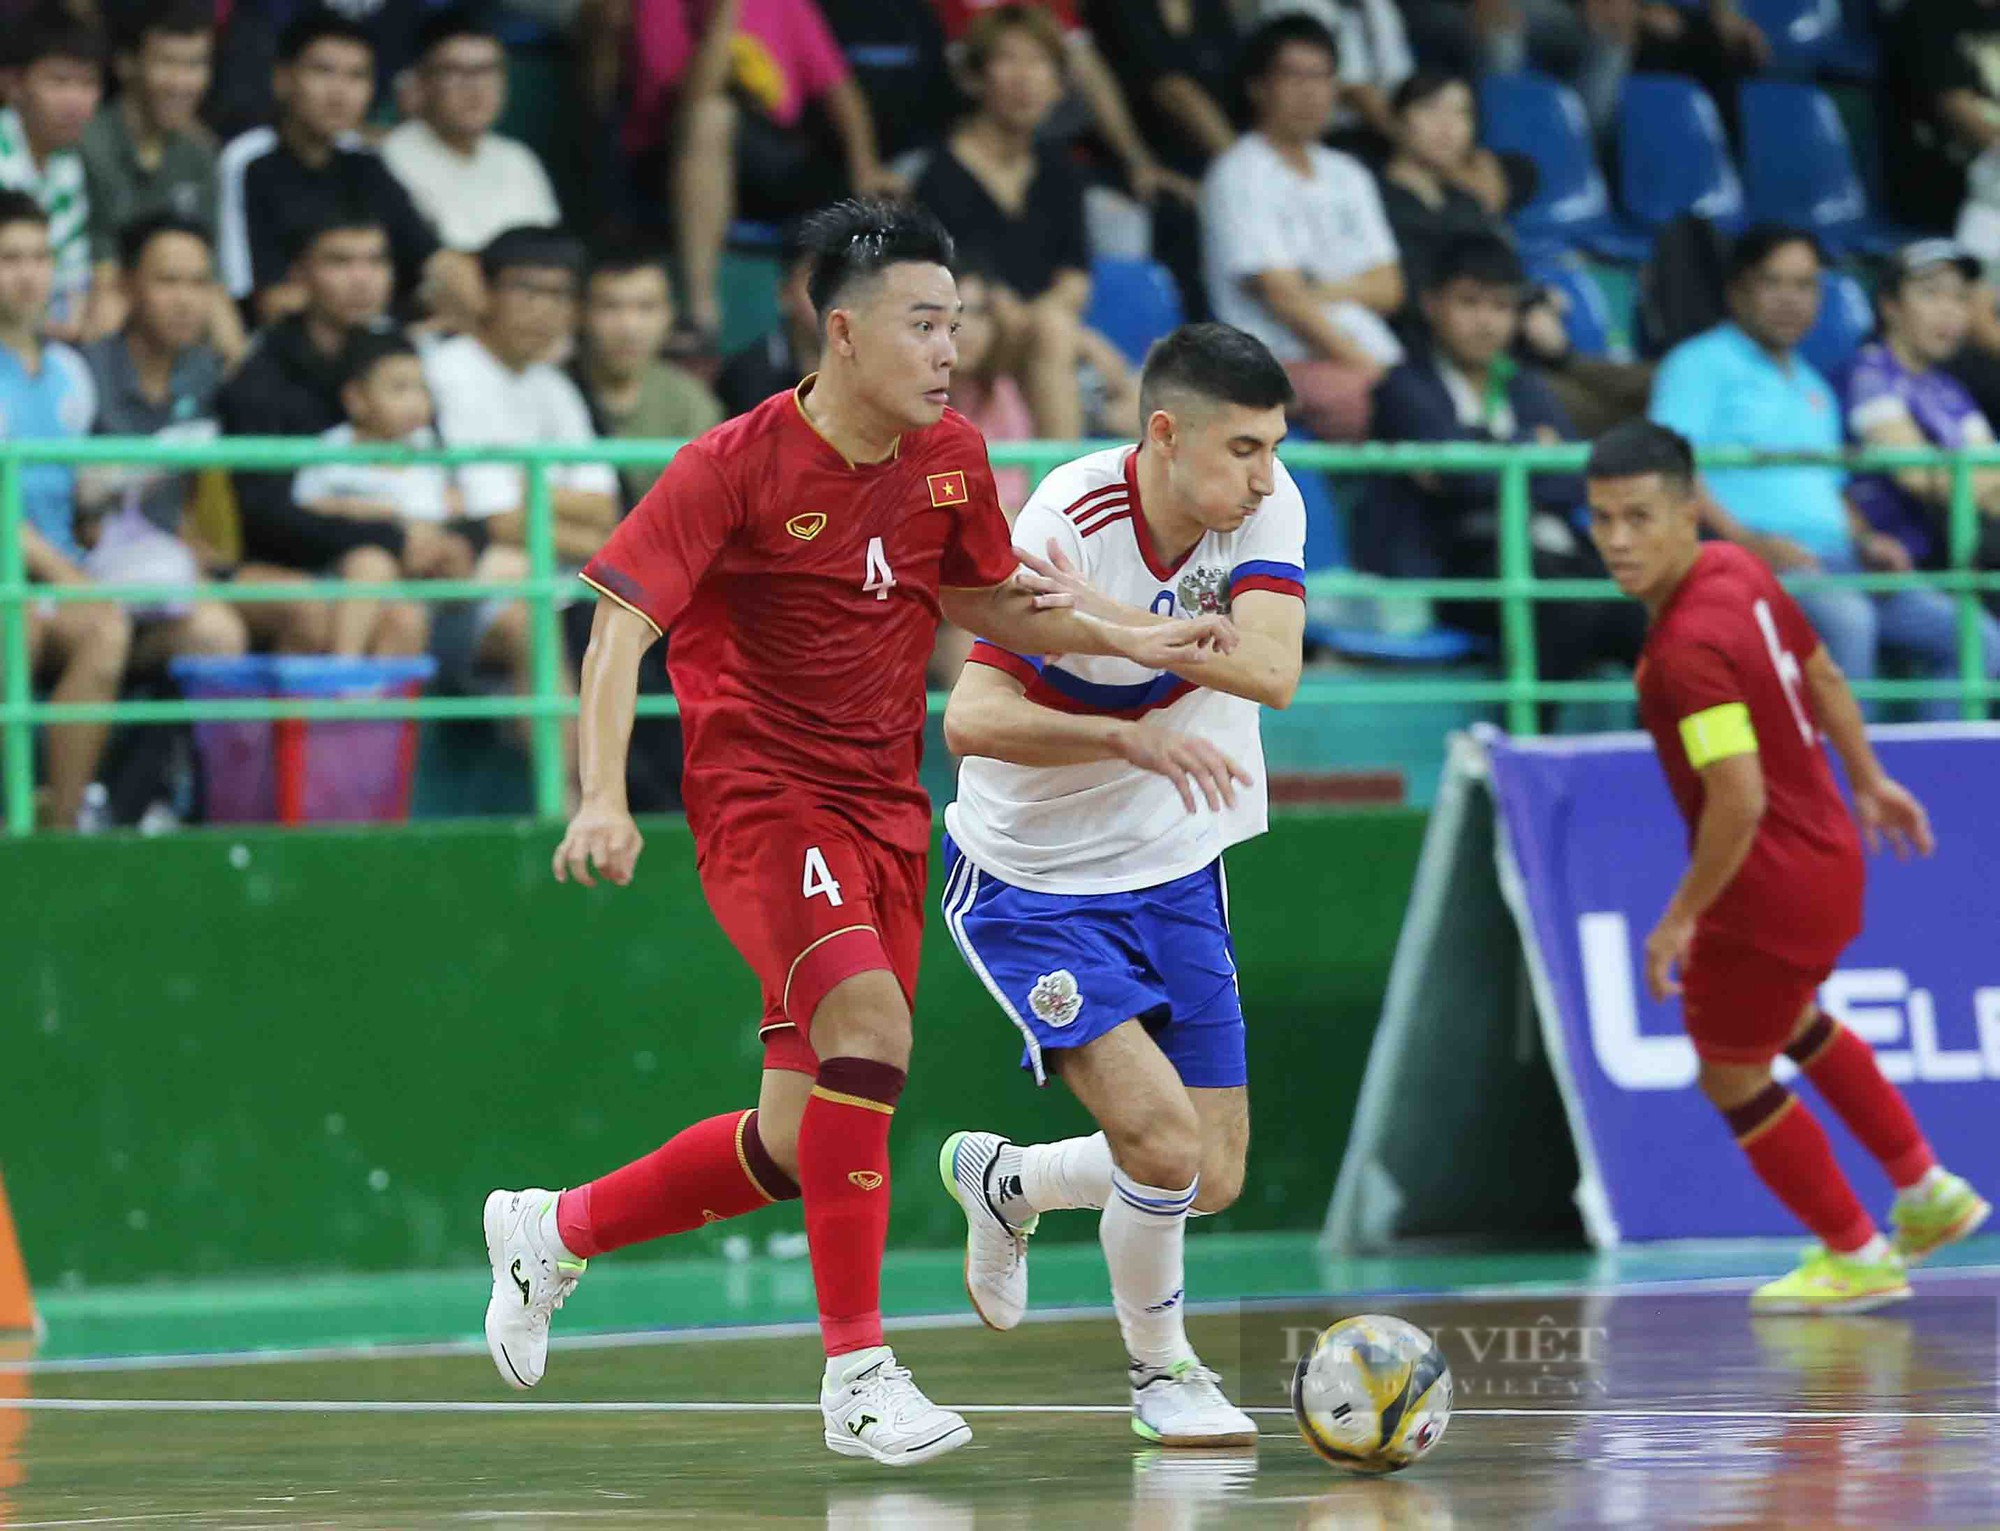 Tân đội trưởng ghi bàn phút cuối, futsal Việt Nam kịch tính cầm hoà đội hạng 4 thế giới - Ảnh 9.